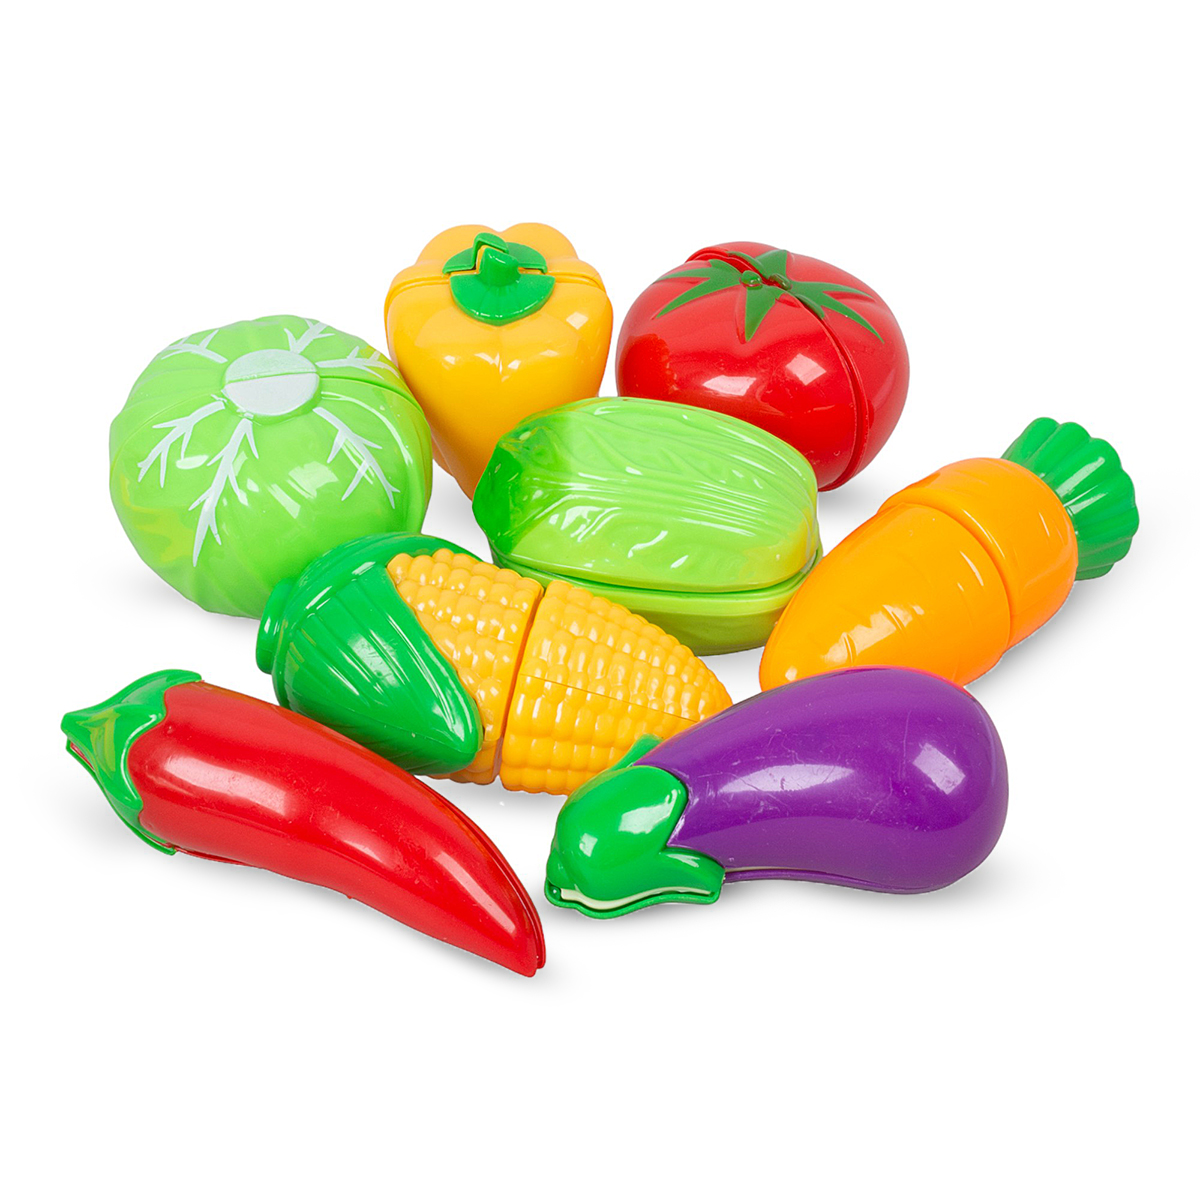 Игровой набор Tongde 3302-1 Овощи для резки, 11 предметов